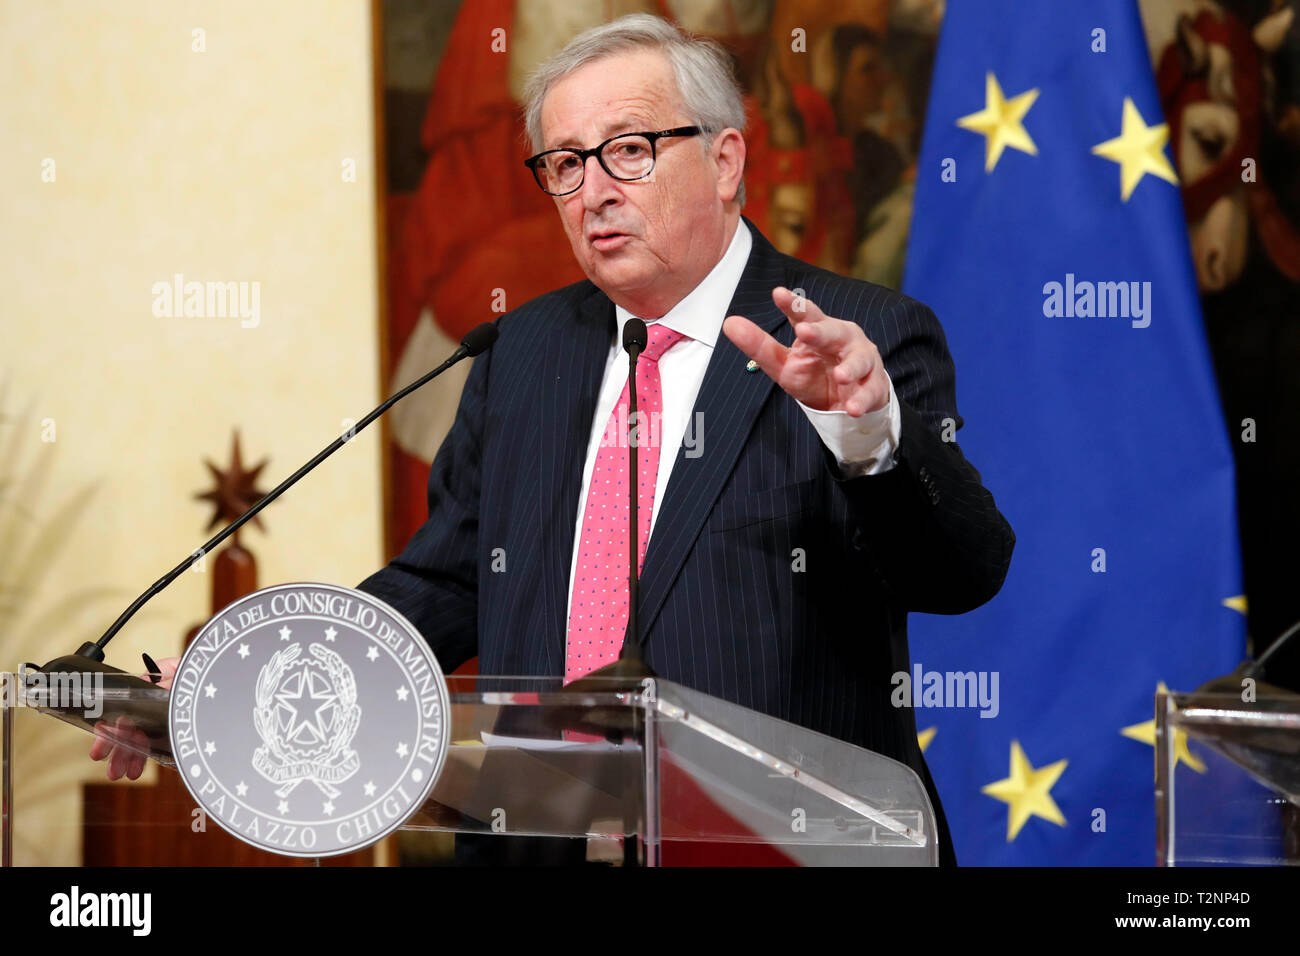 Italien, Rom, 02. April 2019: Jean Claude Juncker, Präsident der Europäischen Kommission, während der Pressekonferenz im Palazzo Chigi. Foto Remo C Stockfoto